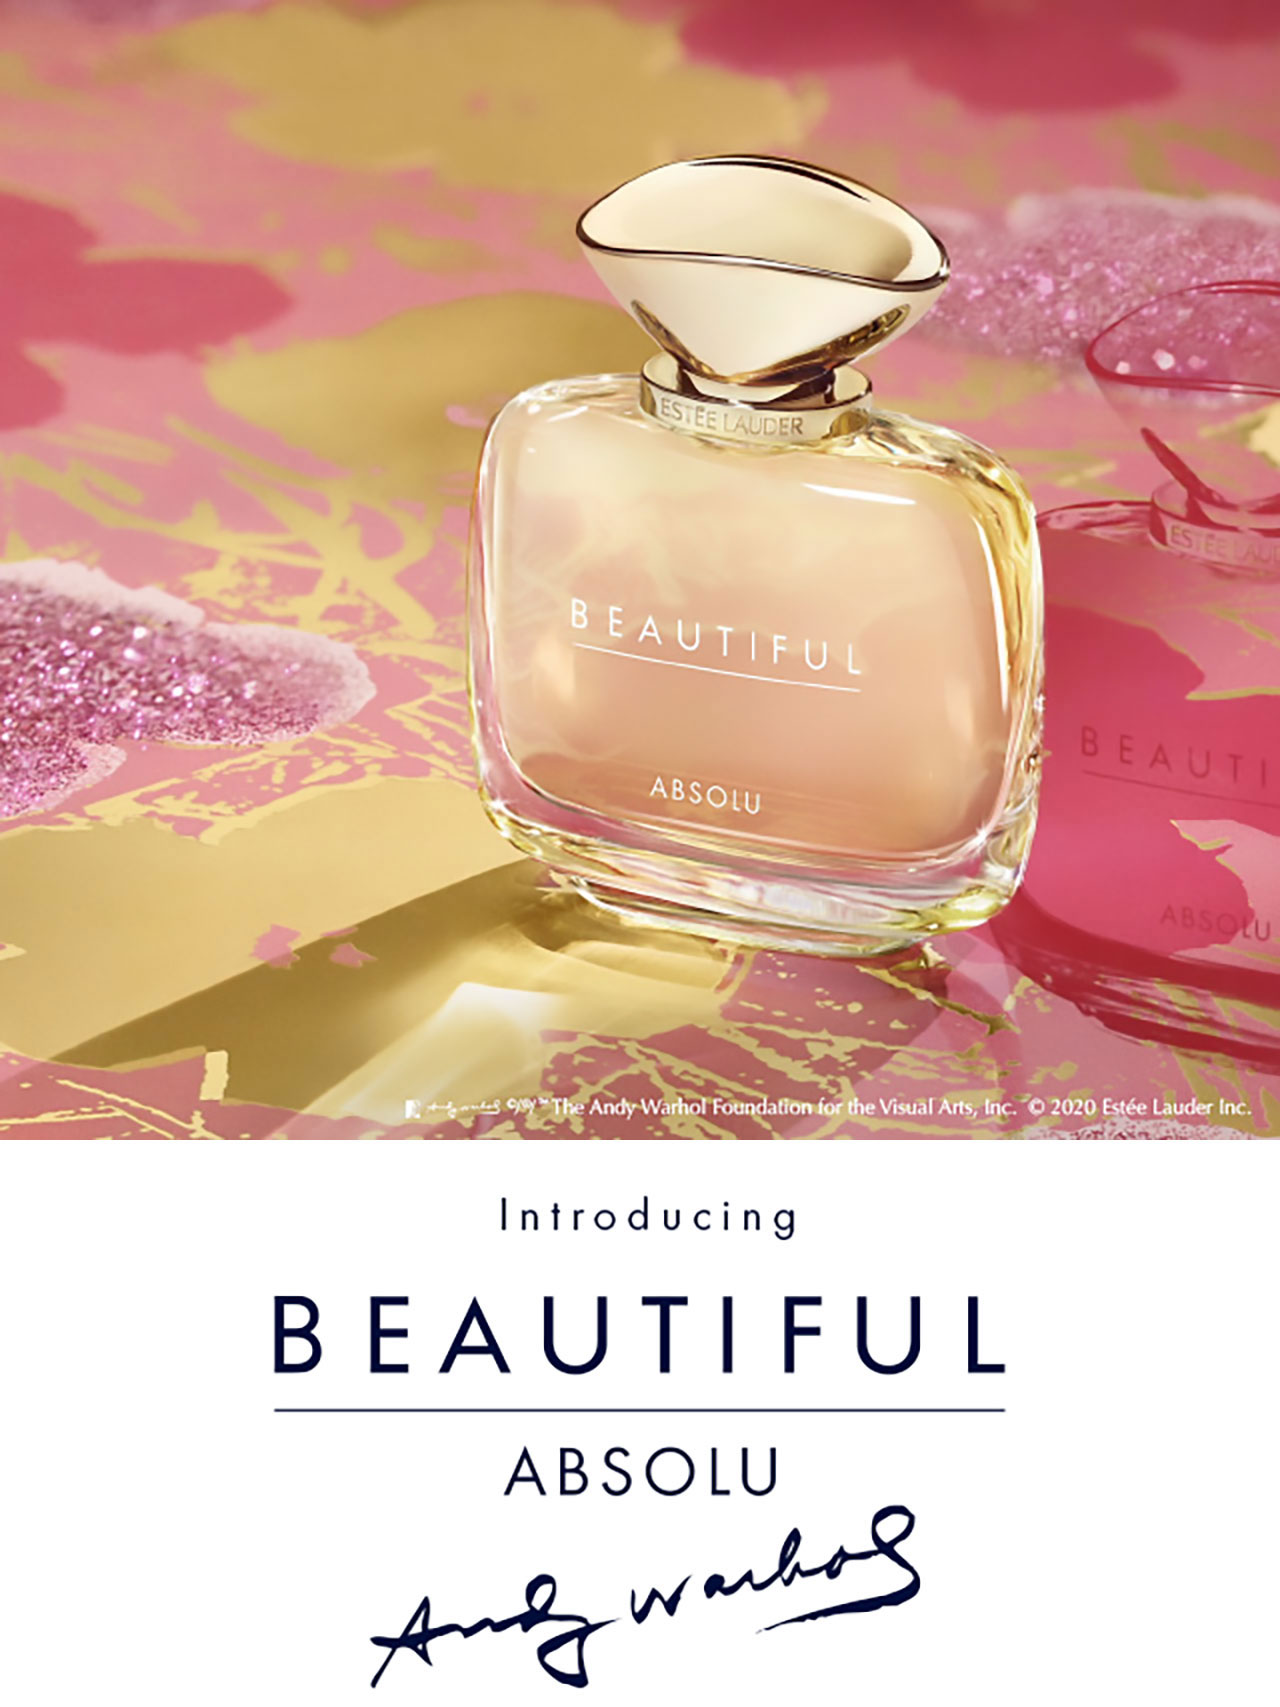 Estee Lauder Beautiful Absolu Fragrance Ad